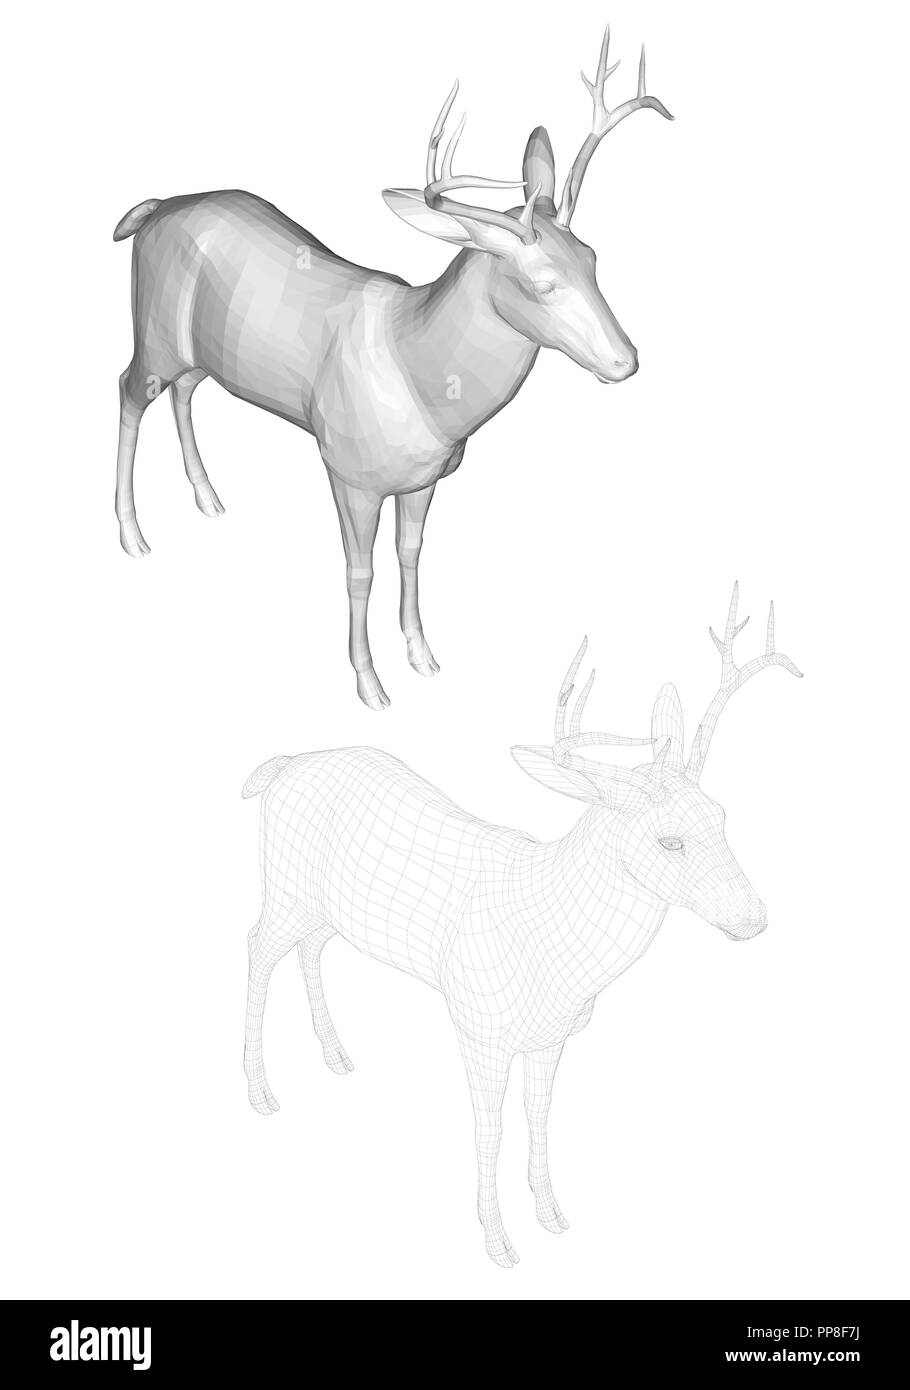 Vector illustration de chevreuils, vue isométrique. Deux cerfs avec réticulée et polygonal 3D. Illustration de Vecteur